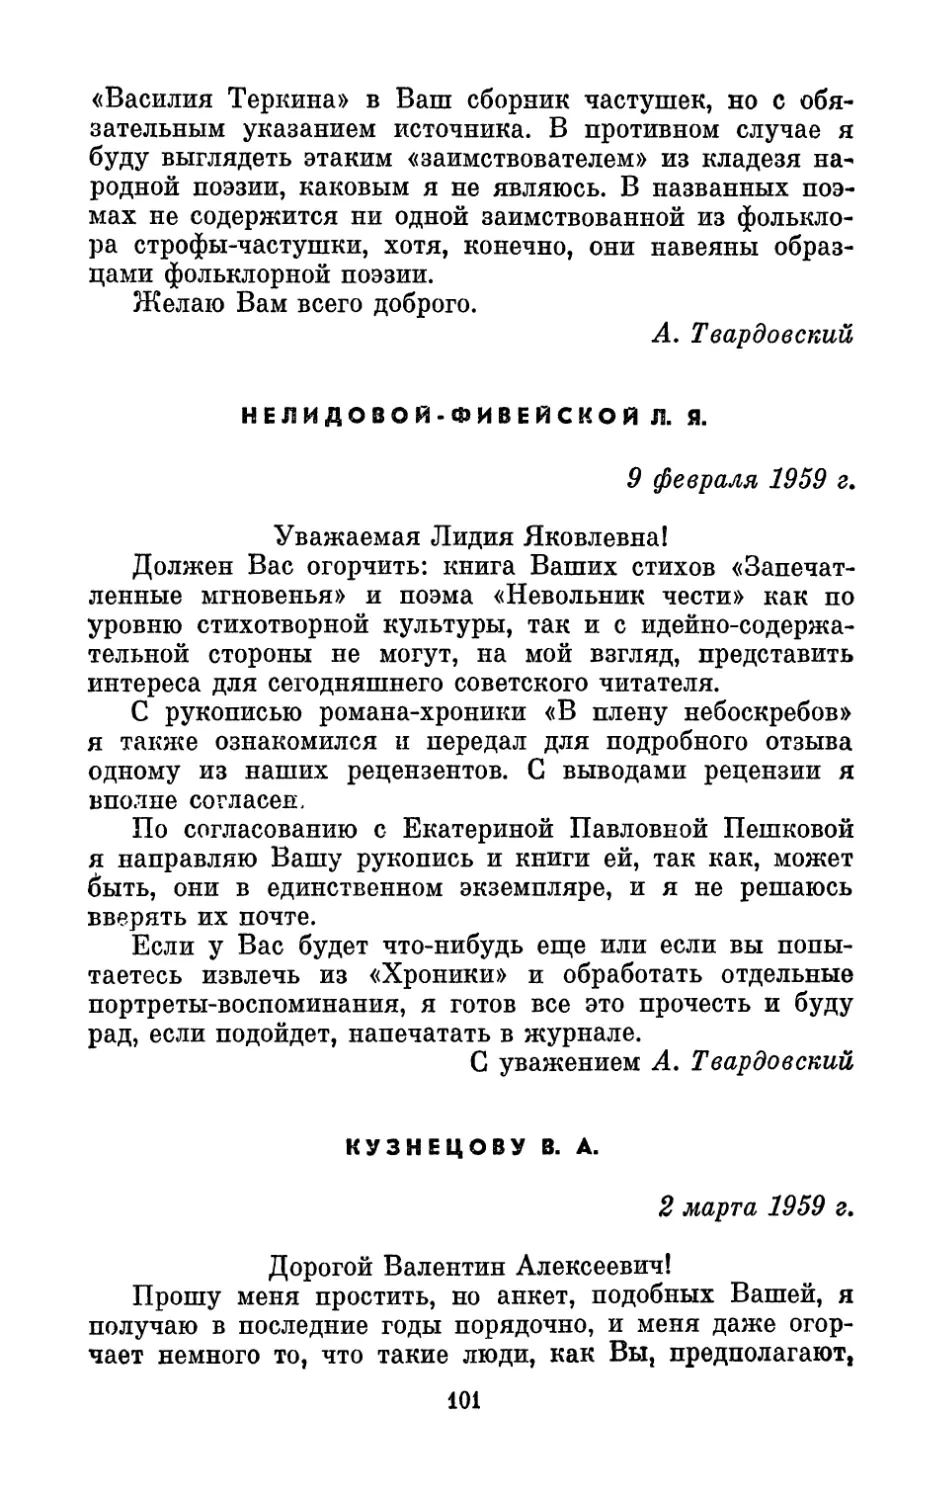 Нелидовой-Фивейской Л. Я., 9 февраля 1959 г.
Кузнецову В. А., 2 марта 1959 г.